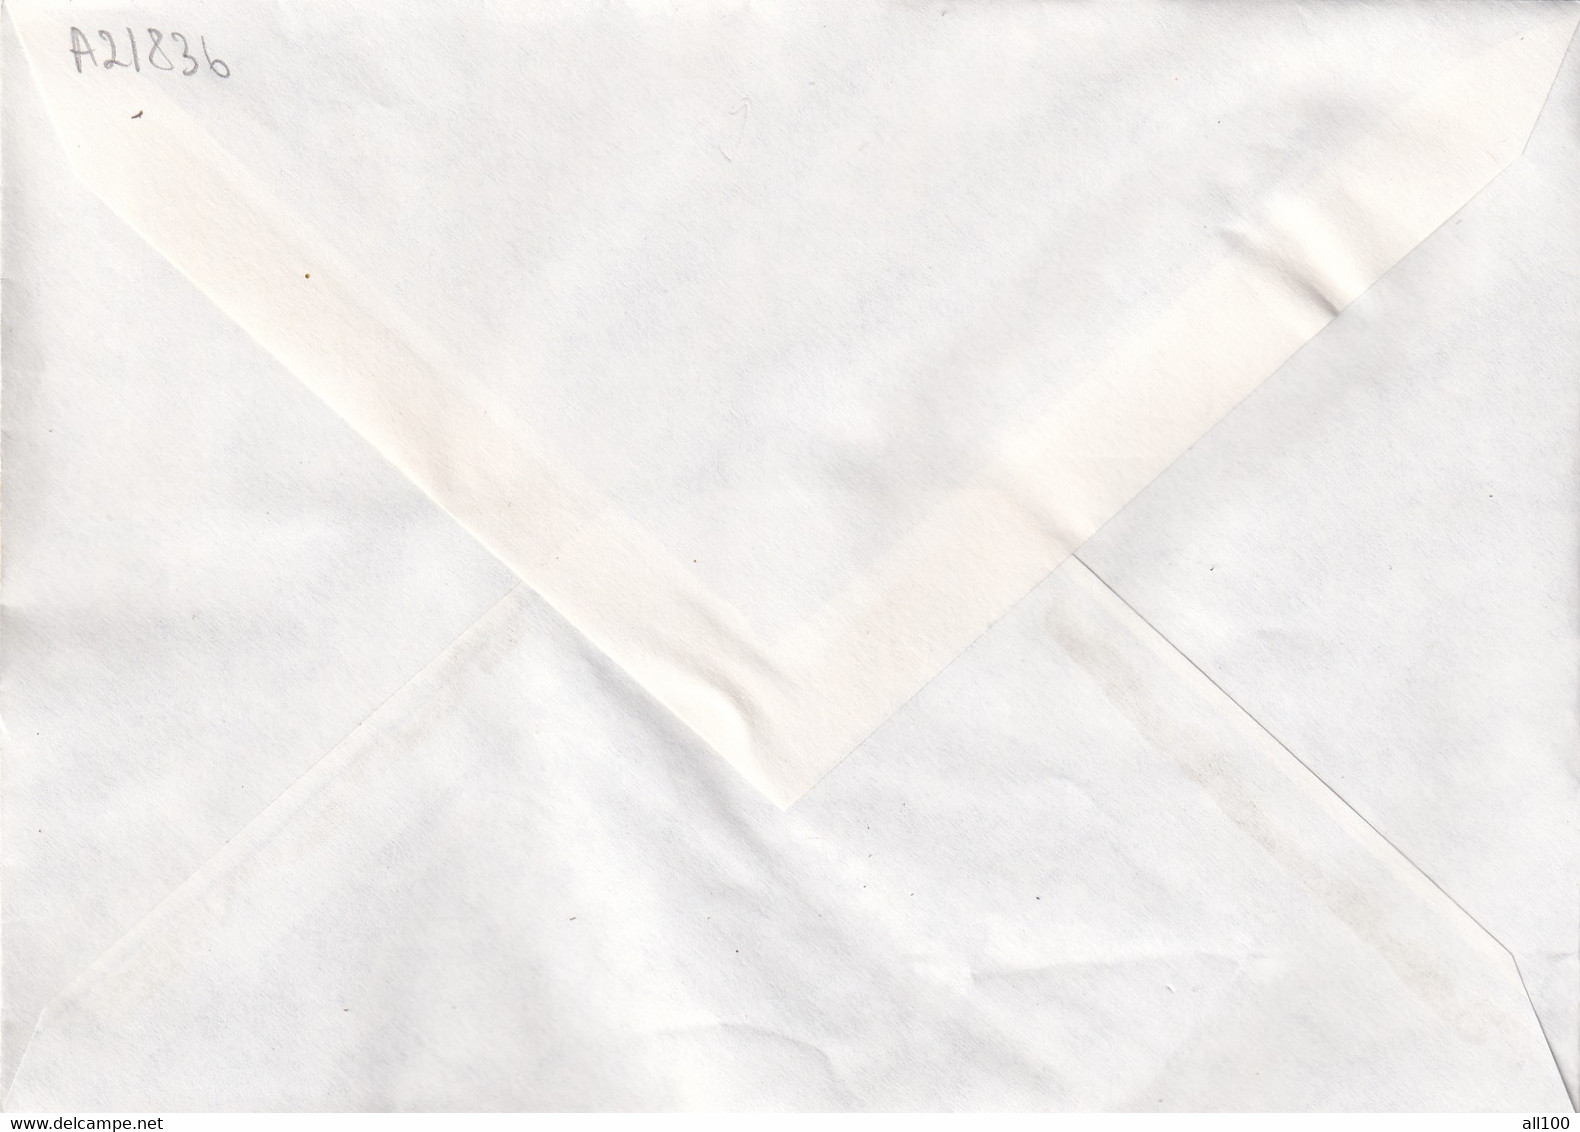 A21836 - Temple De Borobudur Premier Jour Paris Cover Envelope Unused 1979 France Stamp Buddhism - Buddismo